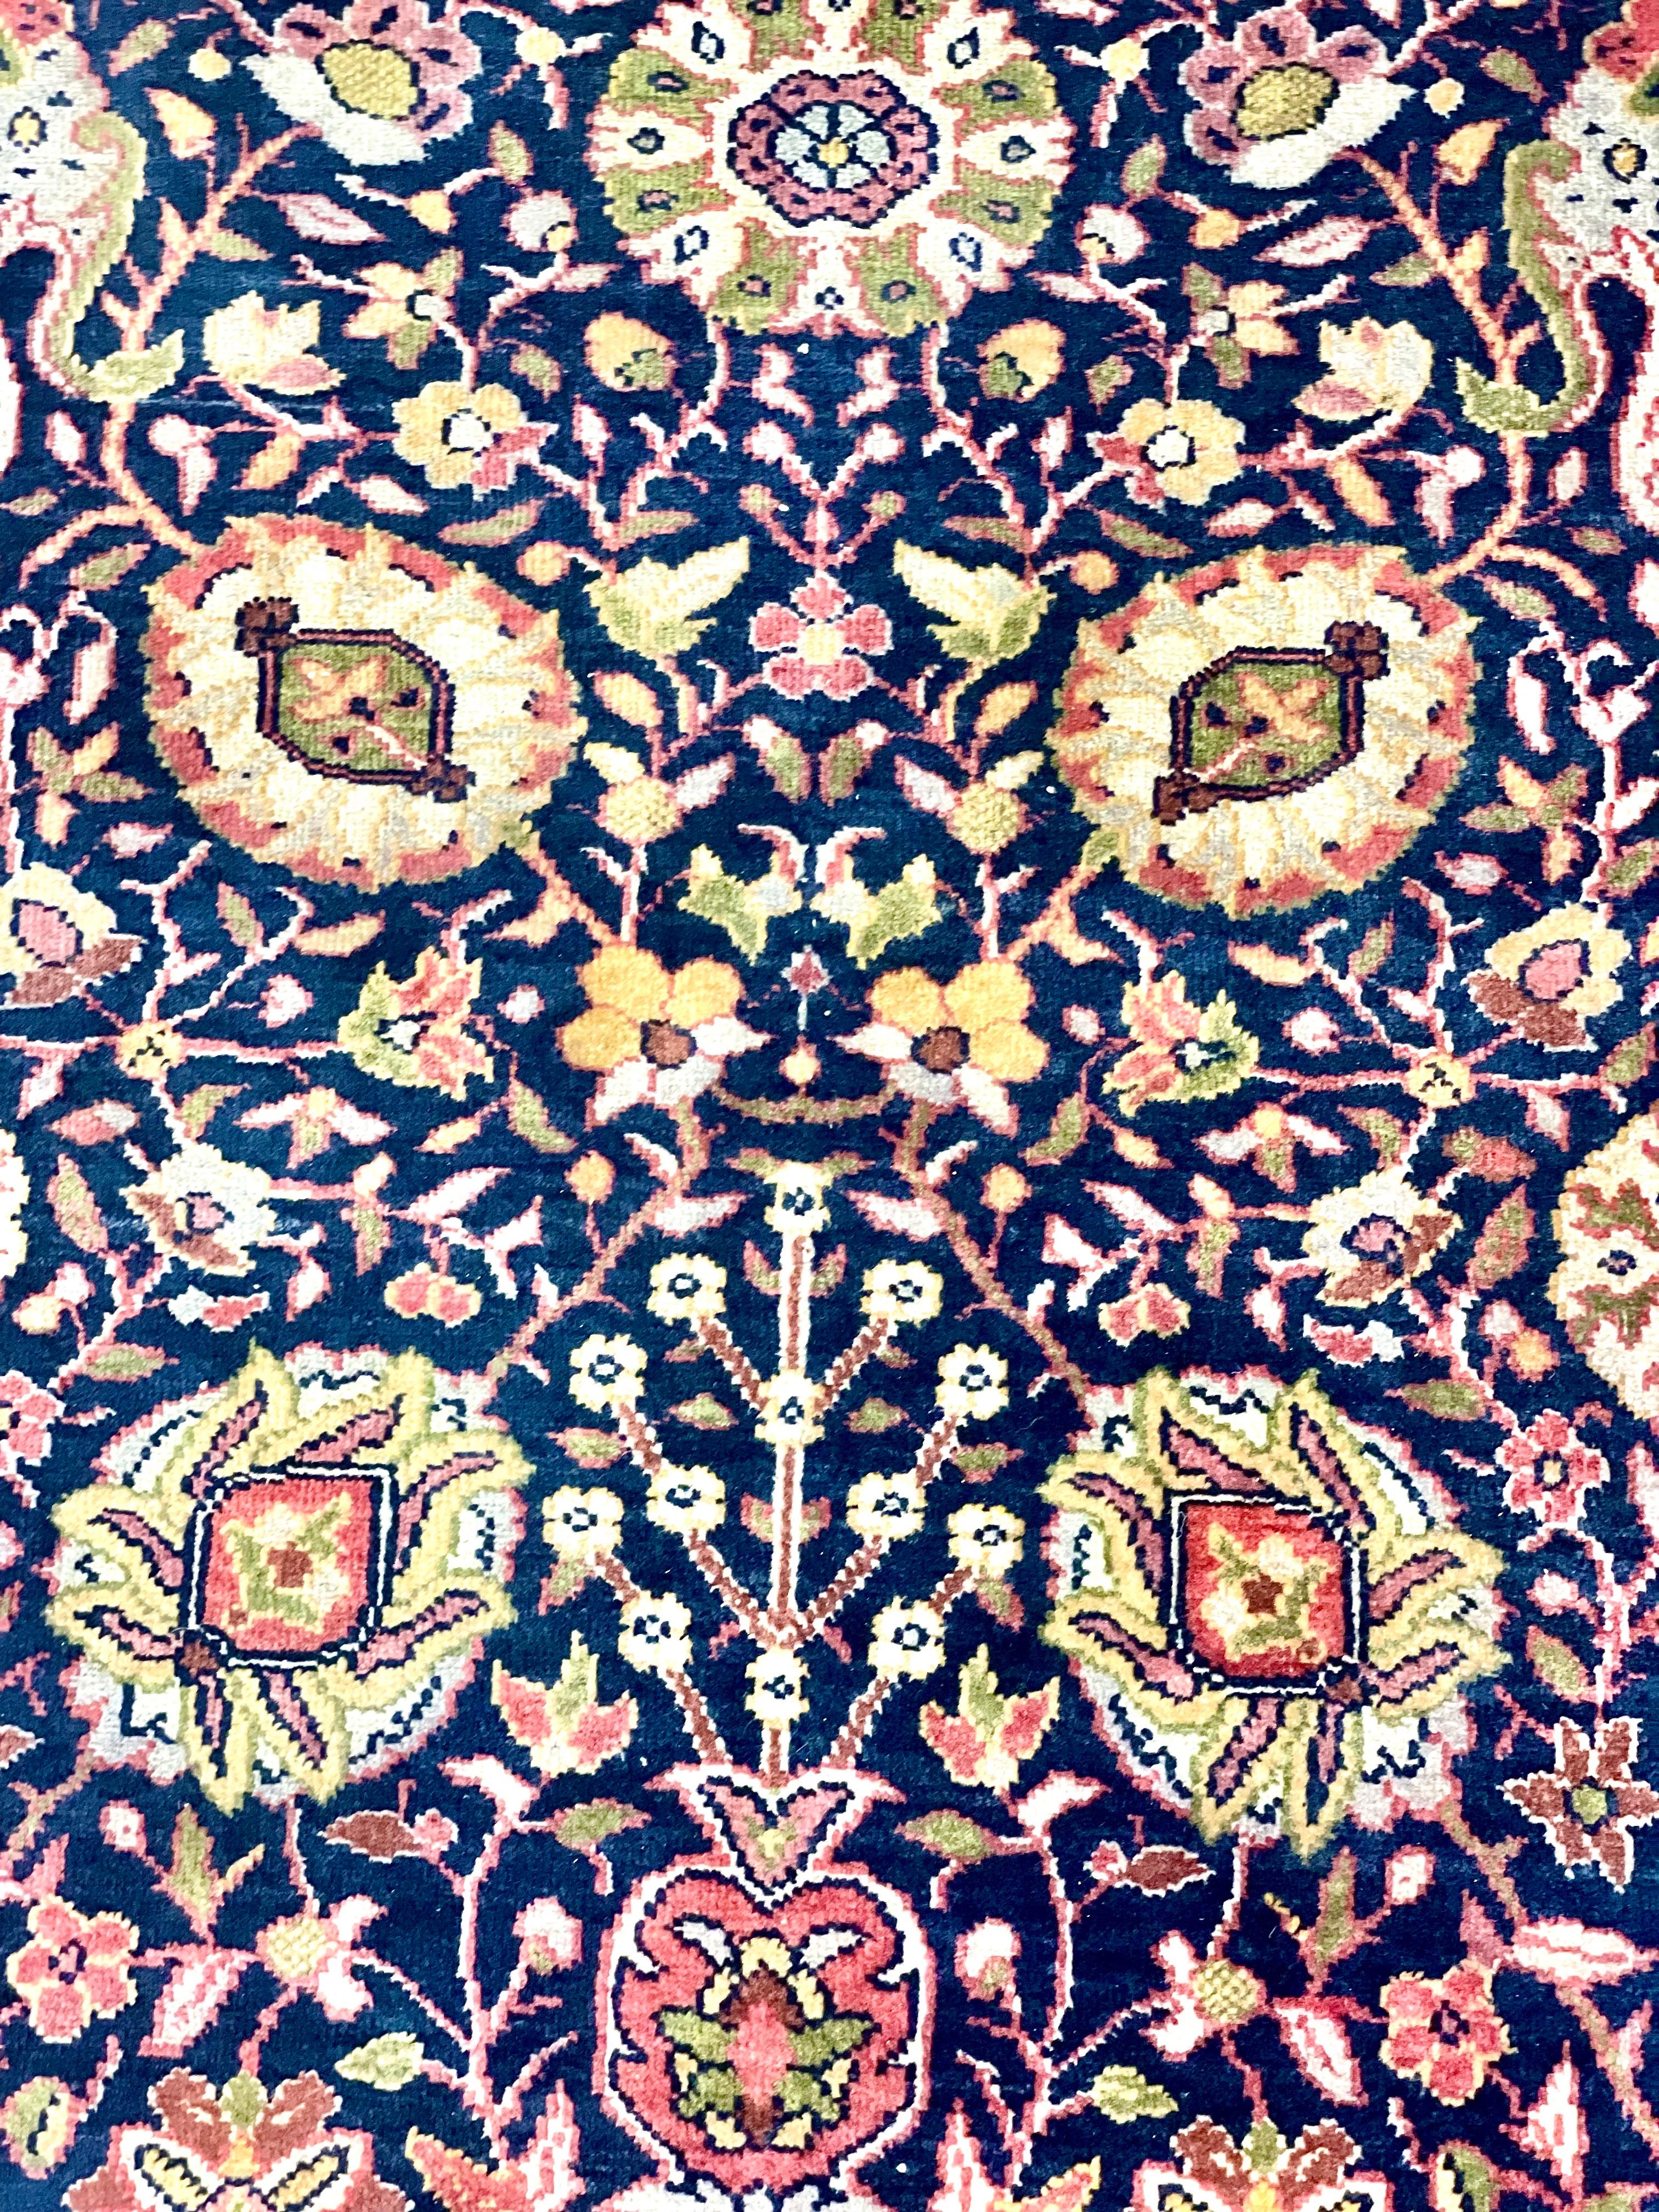 Un vibrant tapis persan, tissé à la main en pure laine. Ce très grand tapis merveilleusement décoré présente un fond bleu nuit orné de fleurs et de feuillages stylisés entrelacés. La bordure rouge contraste parfaitement avec le centre plus foncé et